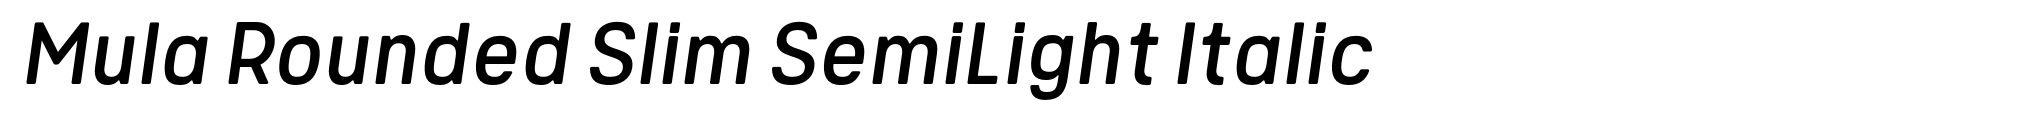 Mula Rounded Slim SemiLight Italic image